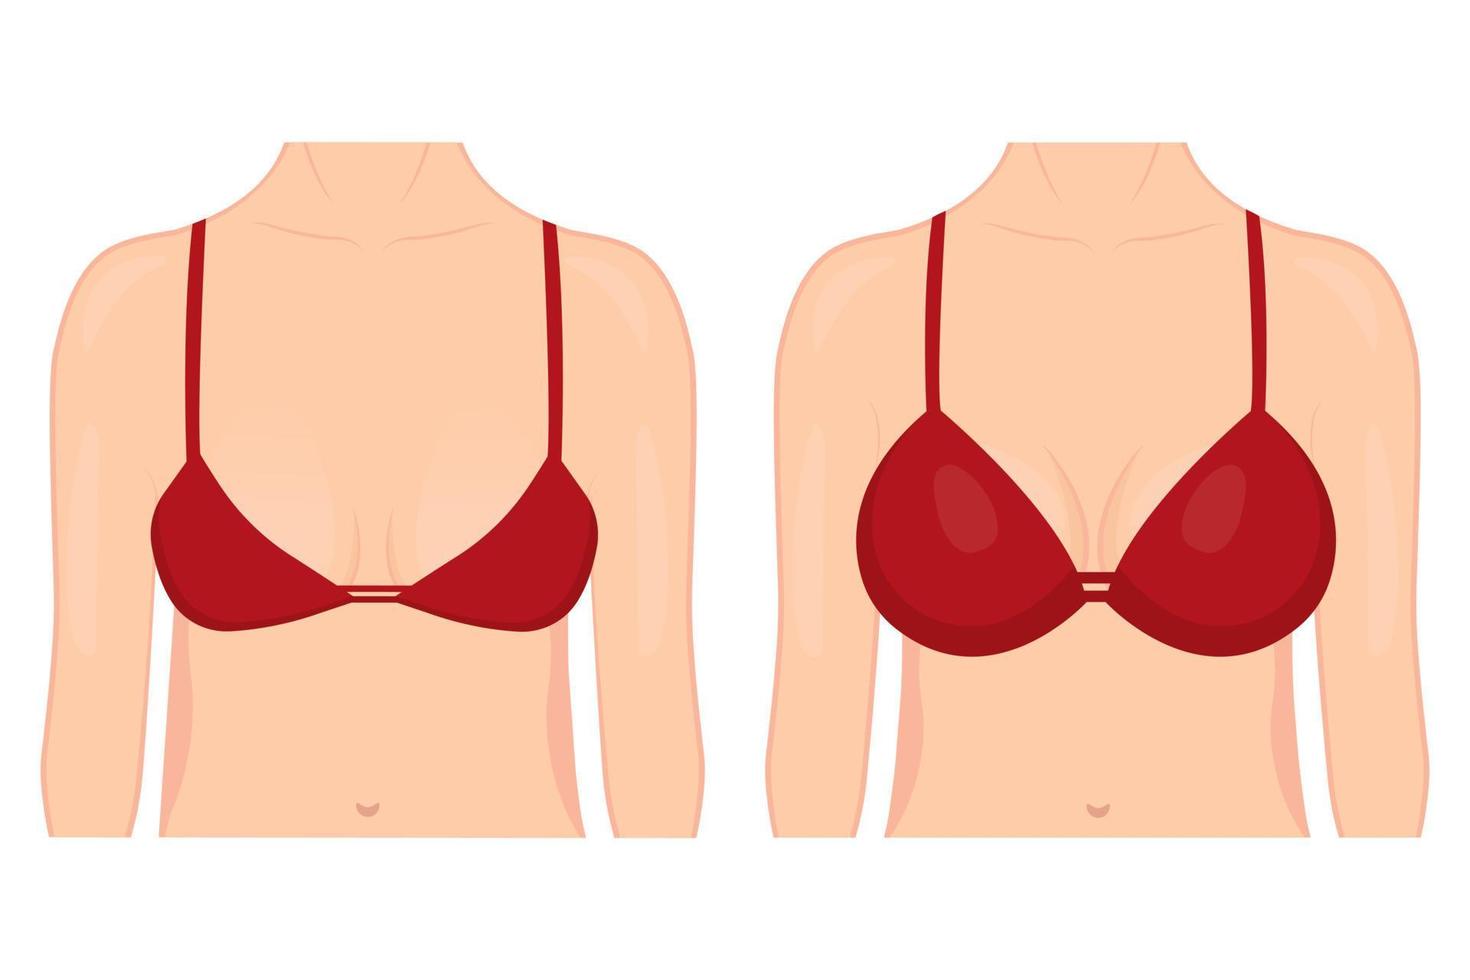 sätta dit av en kvinna innan och efter plast kirurgi för bröst förstärkning. en kvinna i en behå med annorlunda bröst storlekar på en vit bakgrund. för reklam och medicinsk publikationer. vektor